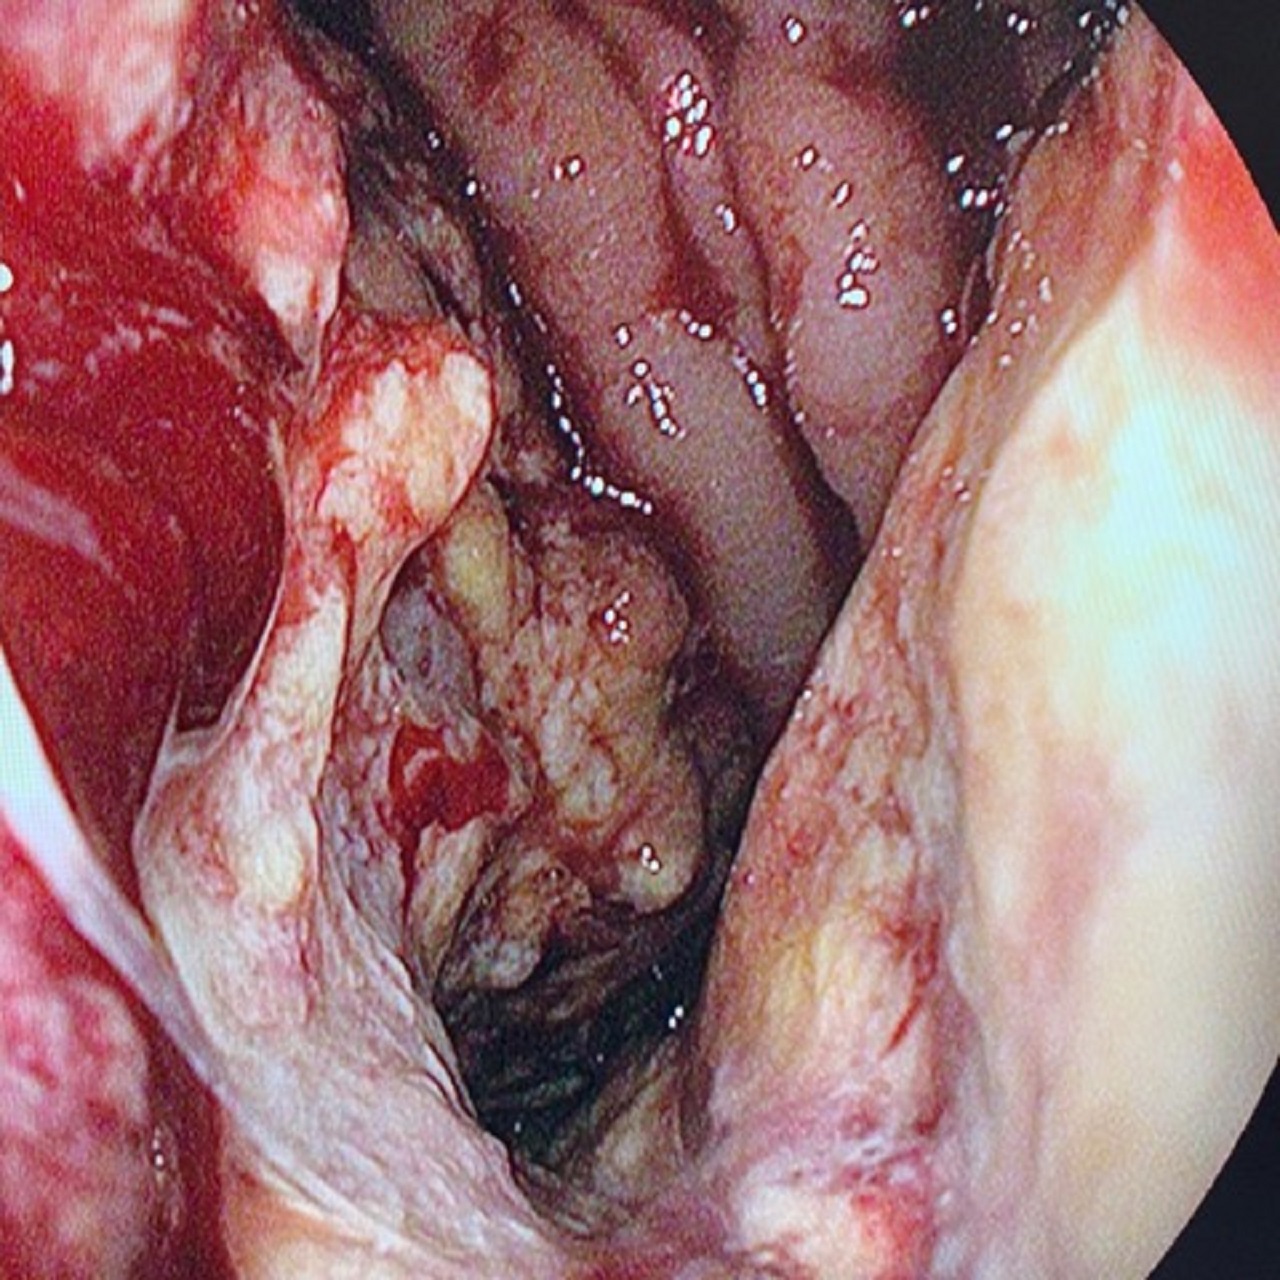 tento zhubný nádor tráviacej trubice, Štefan Hrušovský